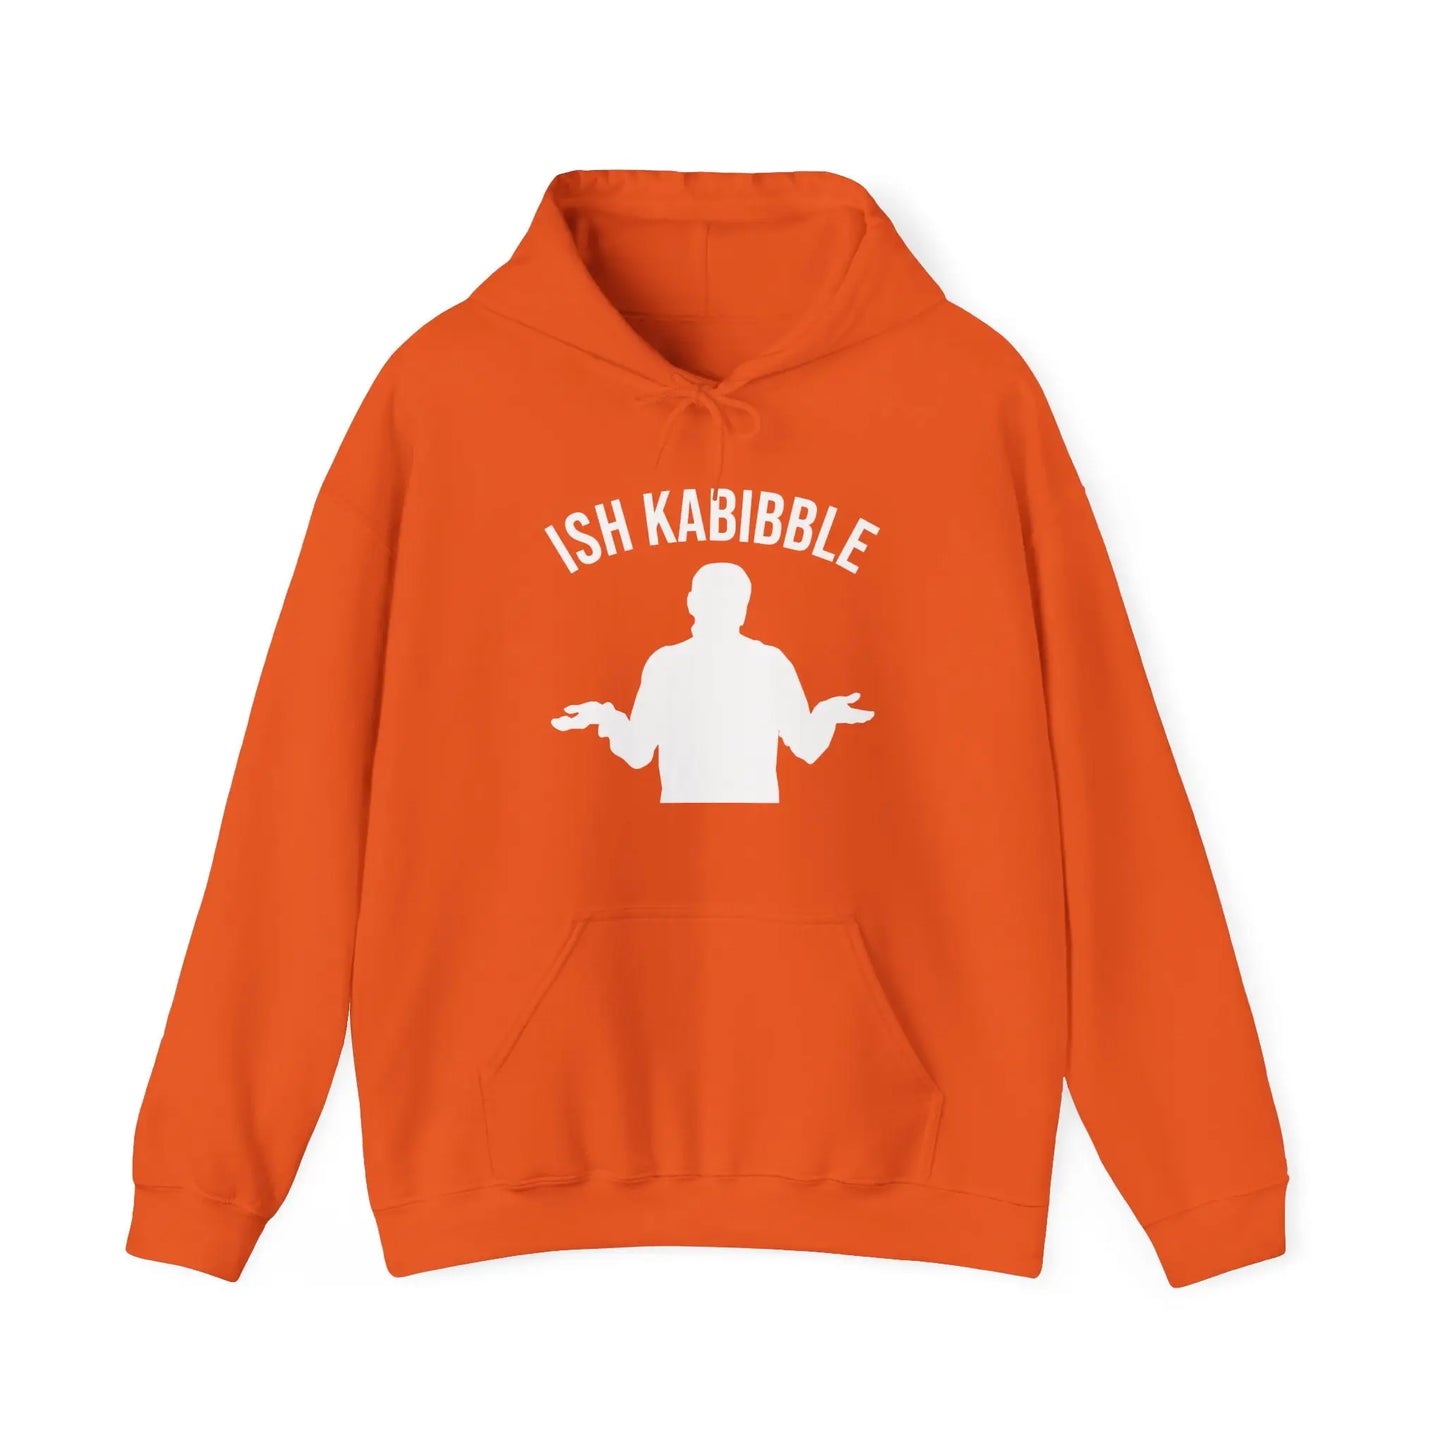 Ish Kabibble Men's Heavy Blend™ Hooded Sweatshirt - Wicked Tees